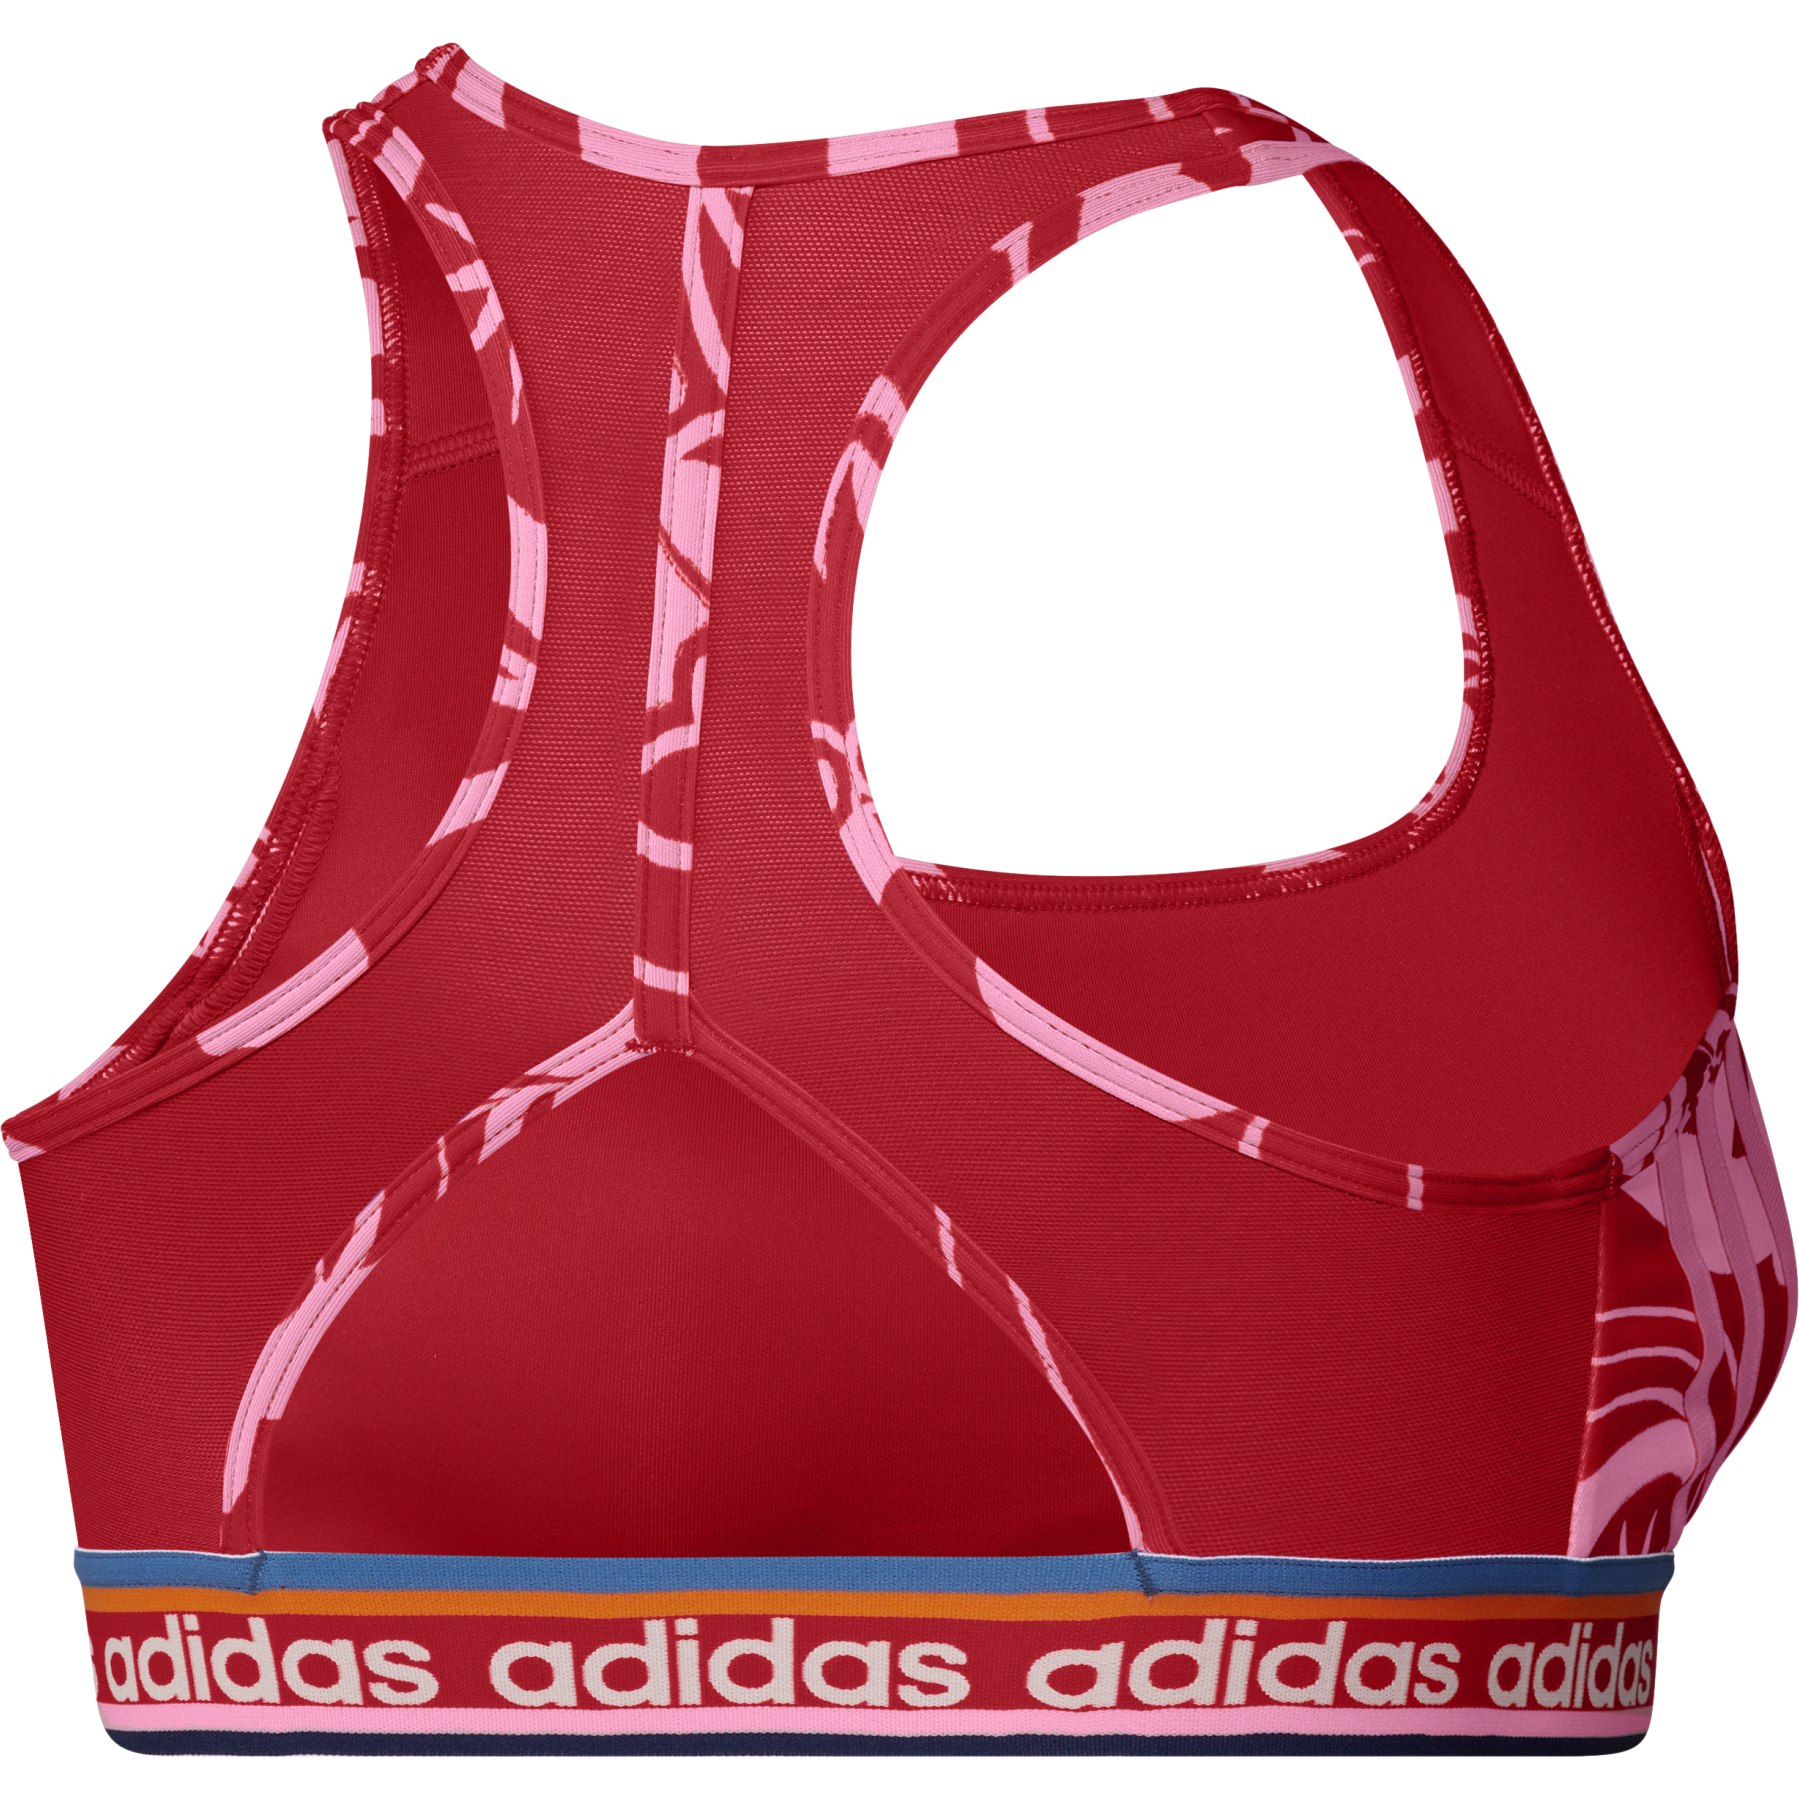 Adidas sports bra size Large NWOT  Adidas sports bra, Red sports bra,  Adidas sport